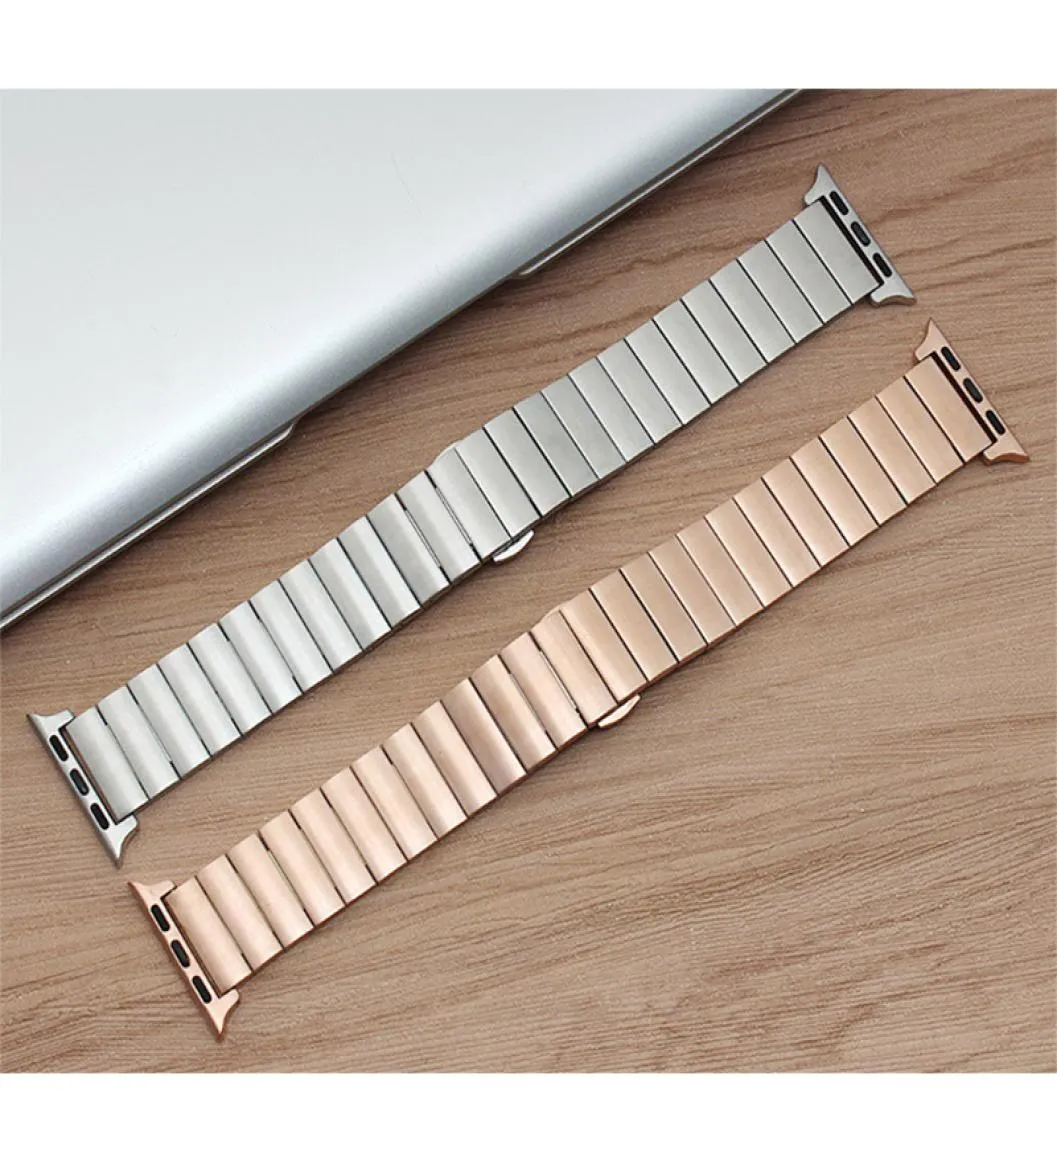 Luxury rostfritt stålfjärilspänne armband för Apple Watch Band 38mm 40mm 42mm 44mm för iWatch Series 1 2 3 4 5 Strap5493081